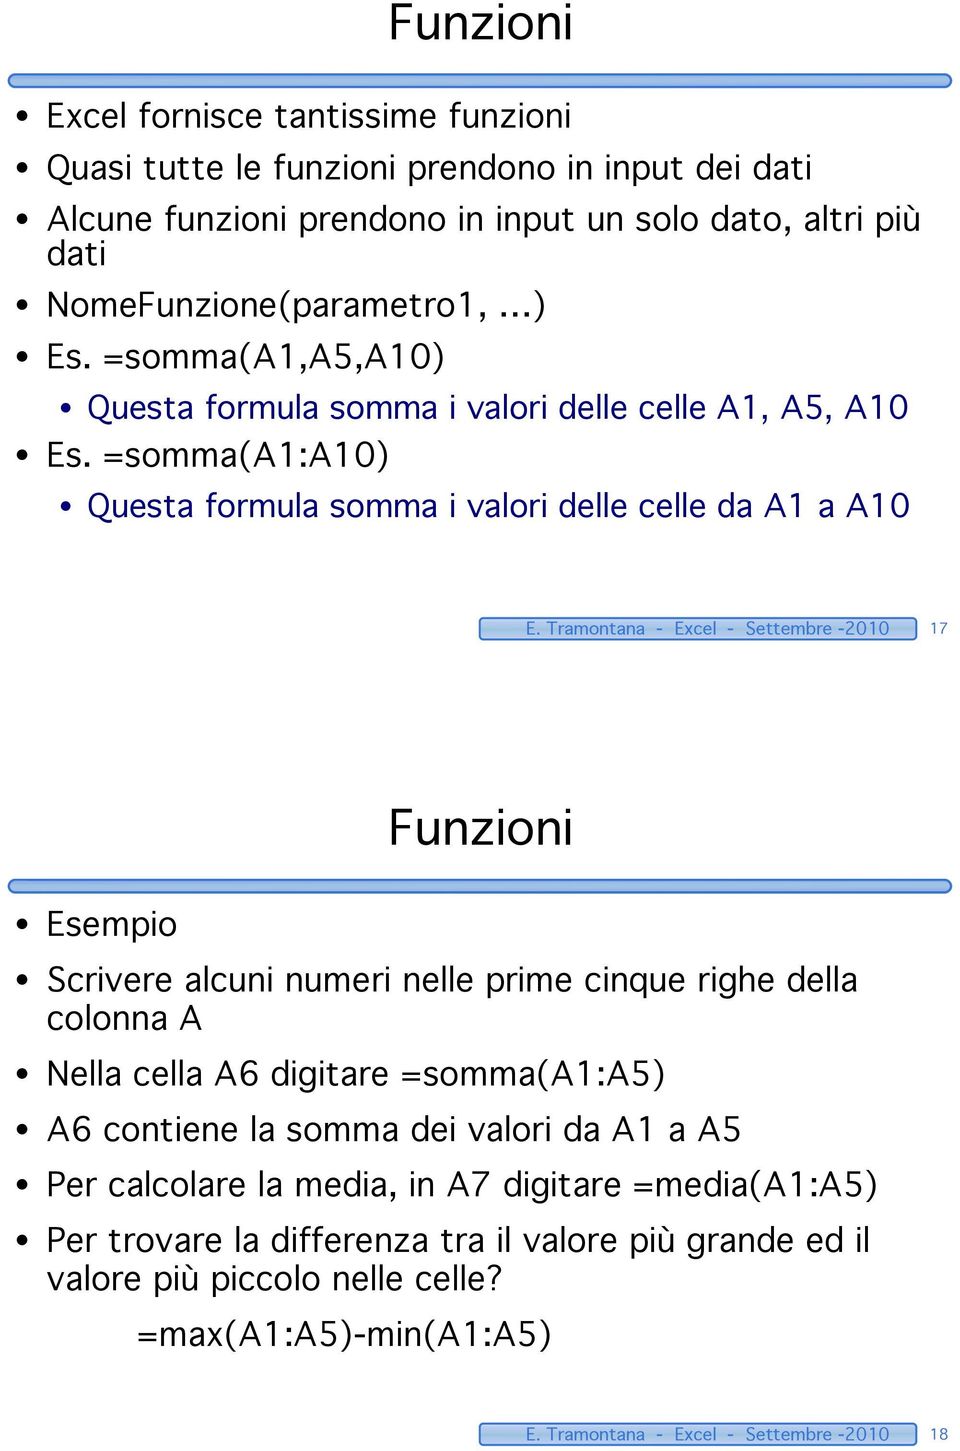 Tramontana - Excel - Settembre -2010 17 Funzioni Esempio Scrivere alcuni numeri nelle prime cinque righe della colonna A Nella cella A6 digitare =somma(a1:a5) A6 contiene la somma dei